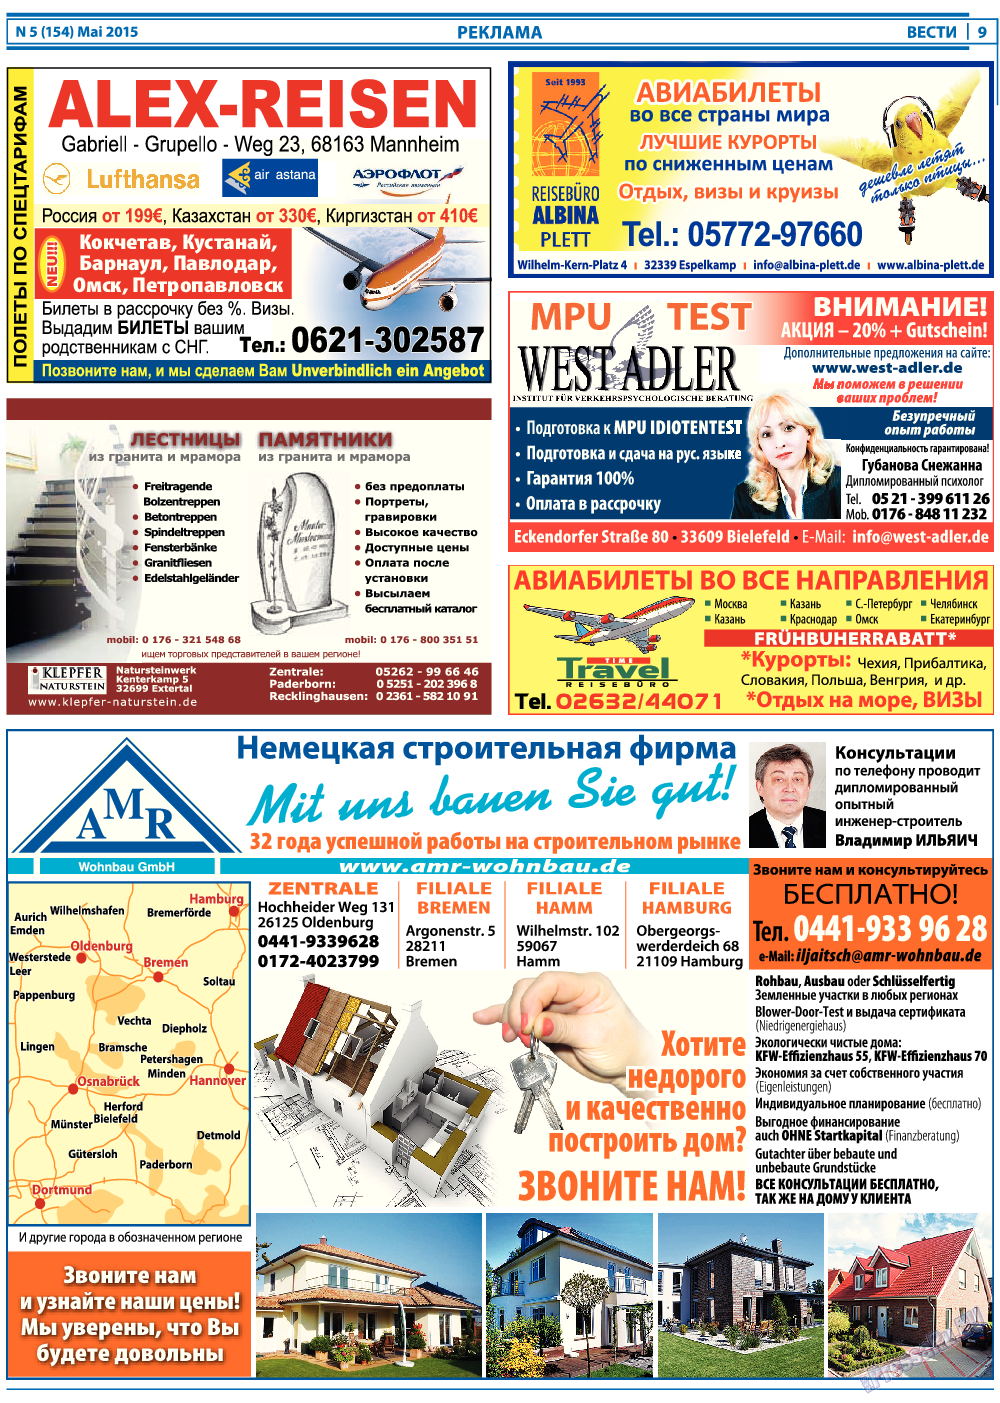 Вести, газета. 2015 №5 стр.9